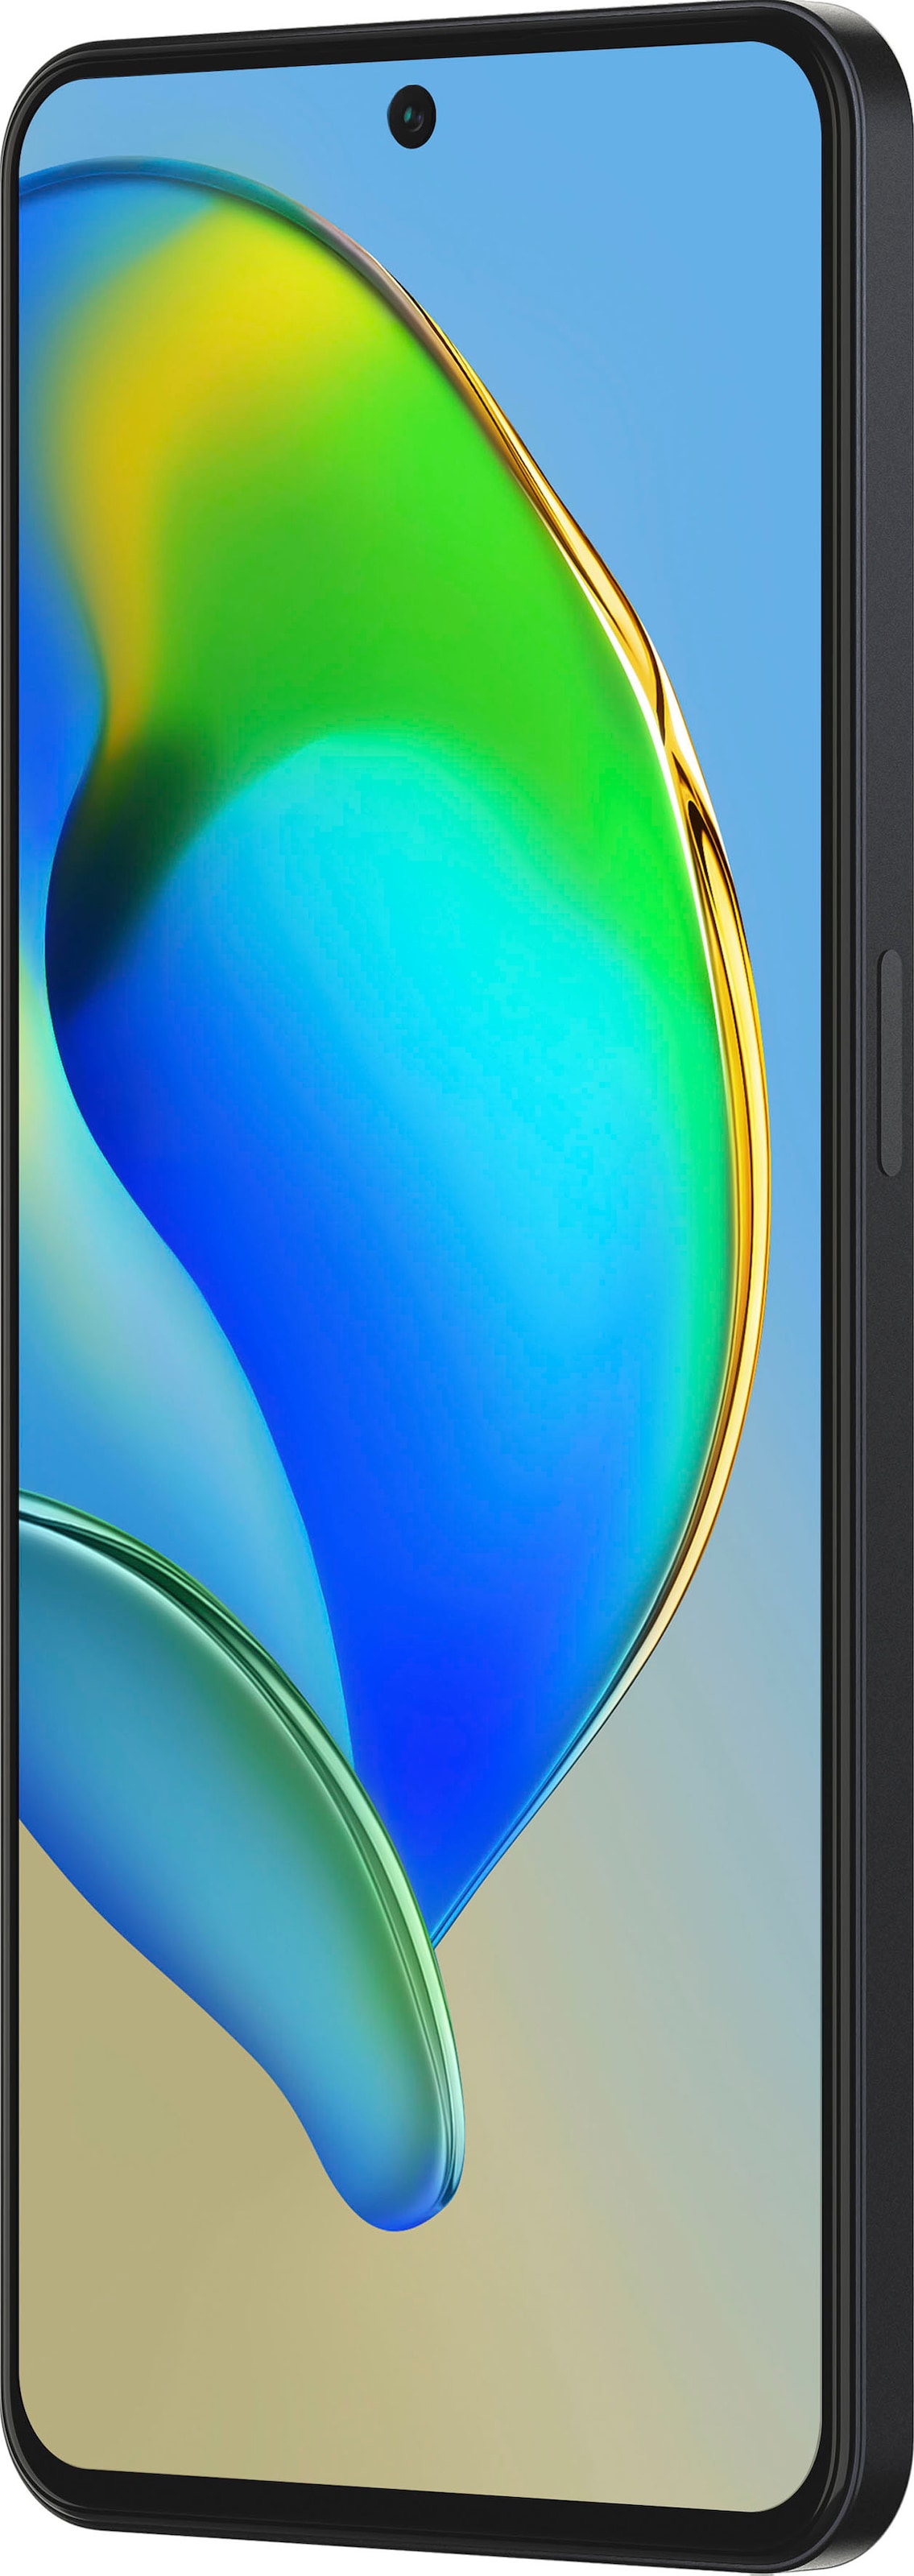 ZTE Smartphone »Blade V40S«, blau, 16,94 cm/6,67 Zoll, 128 GB Speicherplatz,  50 MP Kamera ➥ 3 Jahre XXL Garantie | UNIVERSAL